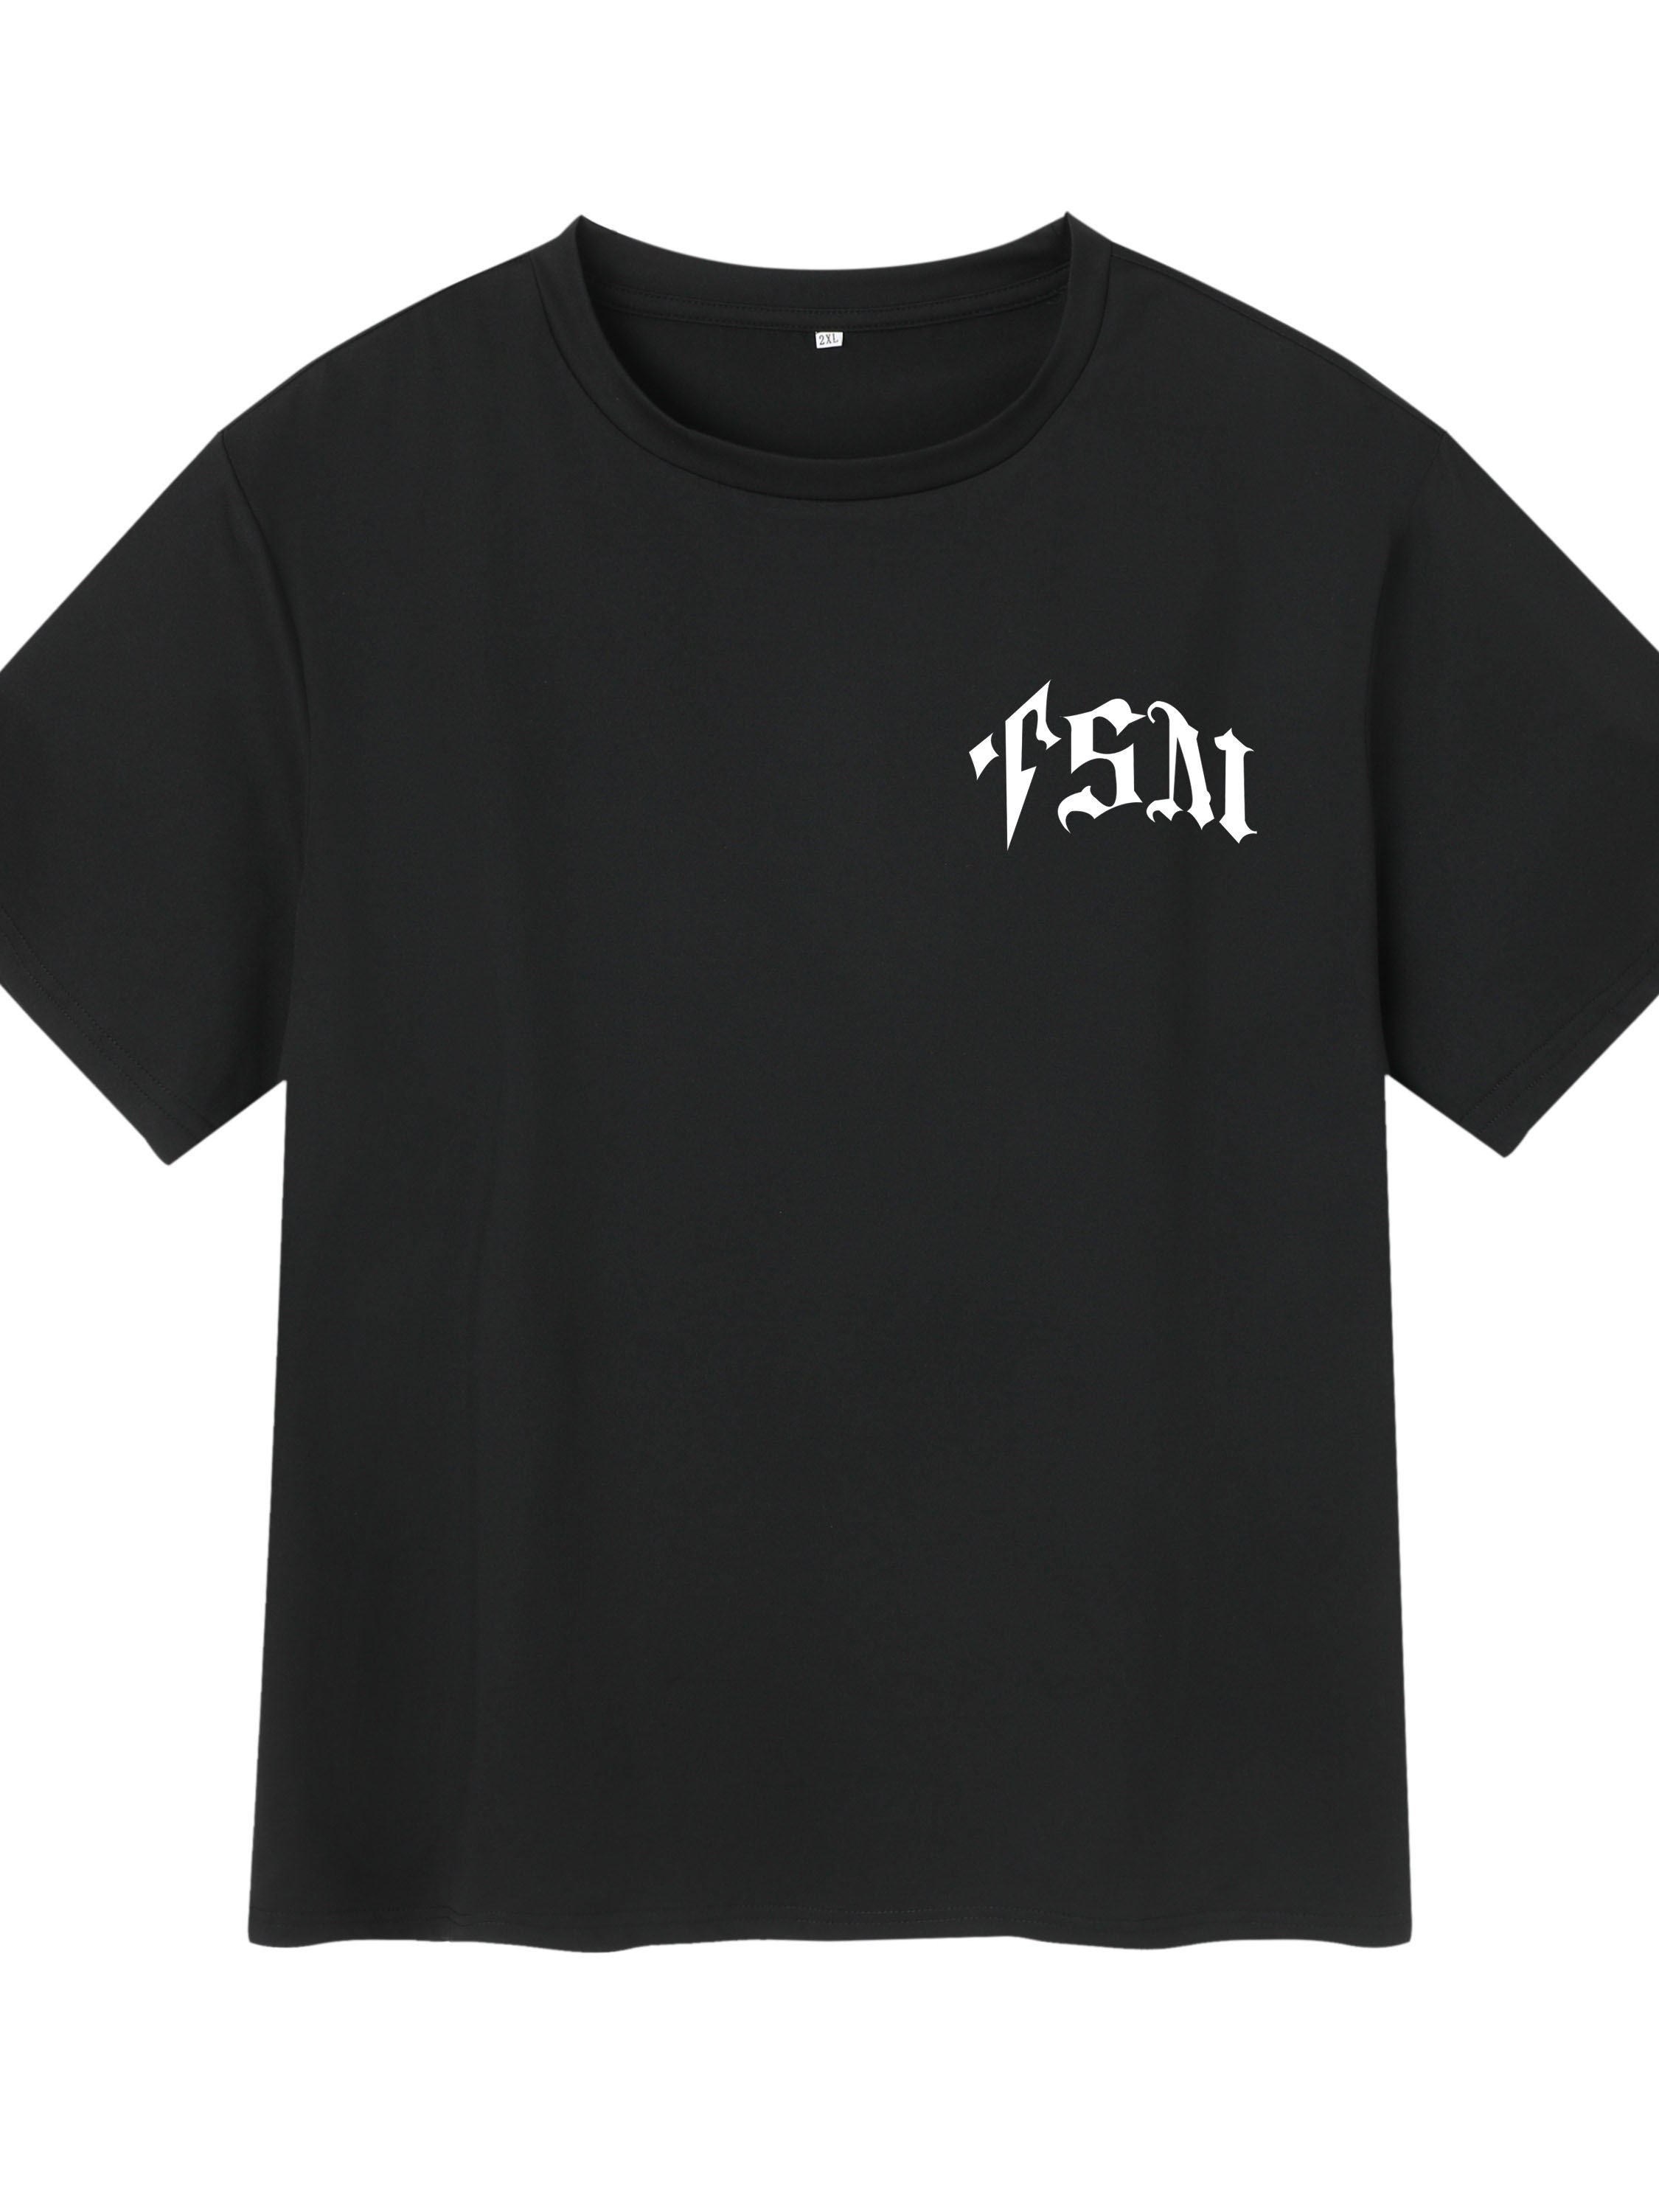 UTA' Camiseta De Hombre Con Estampado, Camiseta Gráfica De Verano